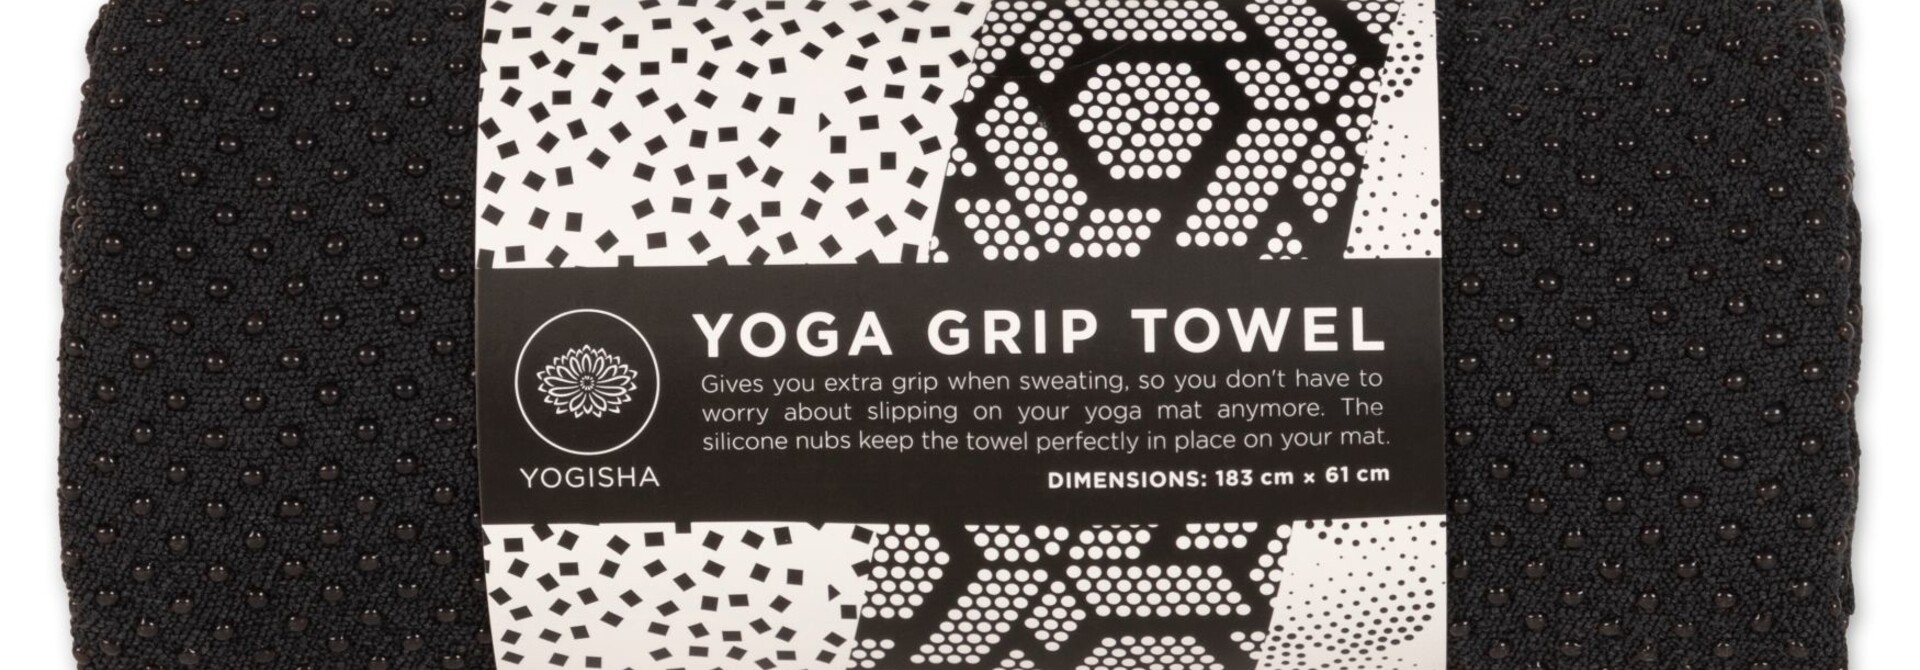 Yogisha Yoga Handdoek